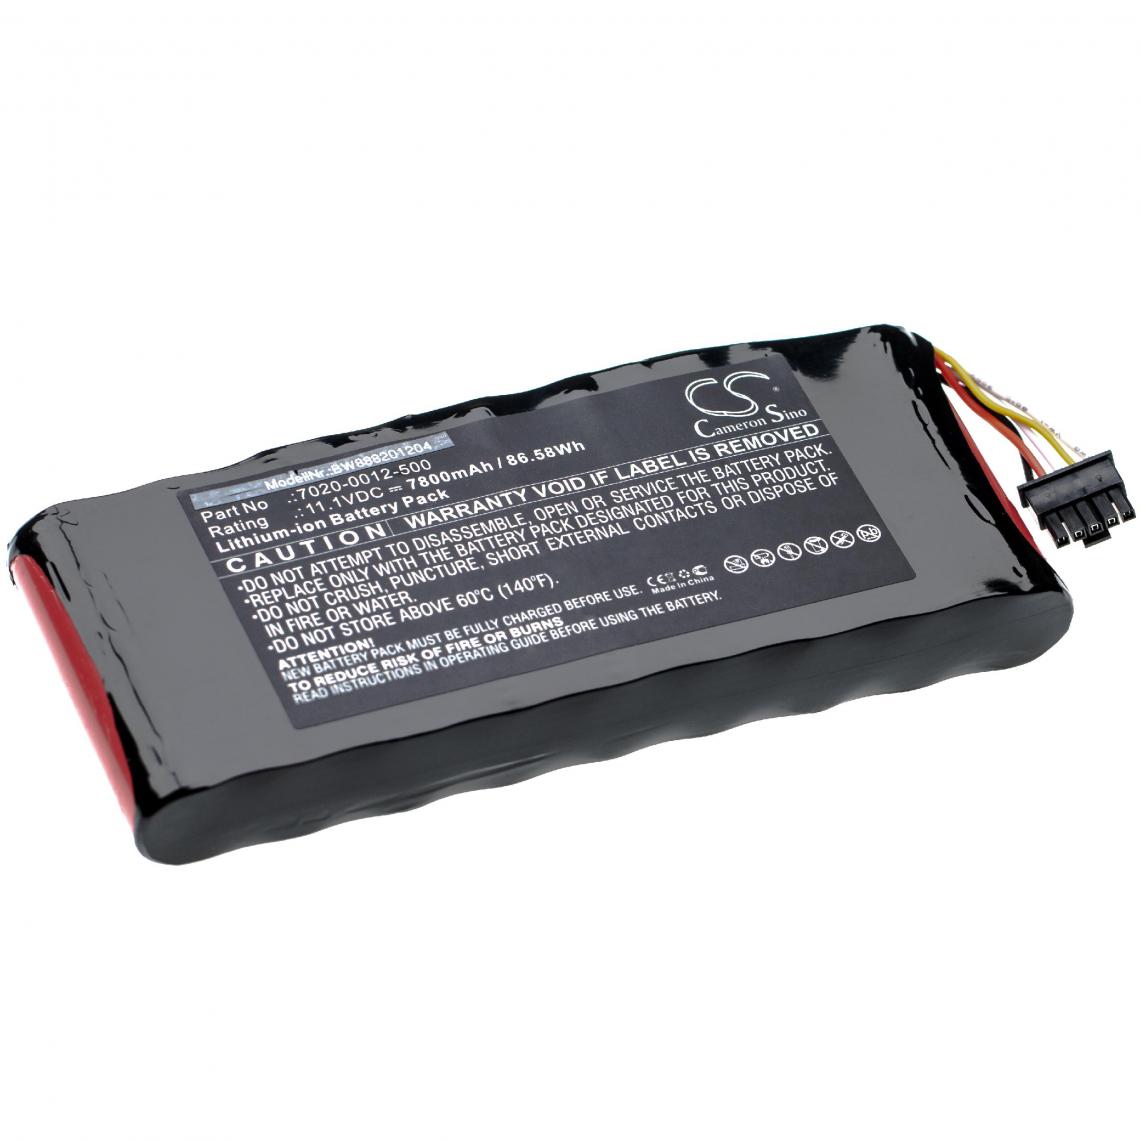 Vhbw - vhbw Batterie compatible avec Aeroflex 3500A, Cobham AvComm 8800S outil de mesure (7800mAh 11,1V Li-Ion) - Piles rechargeables